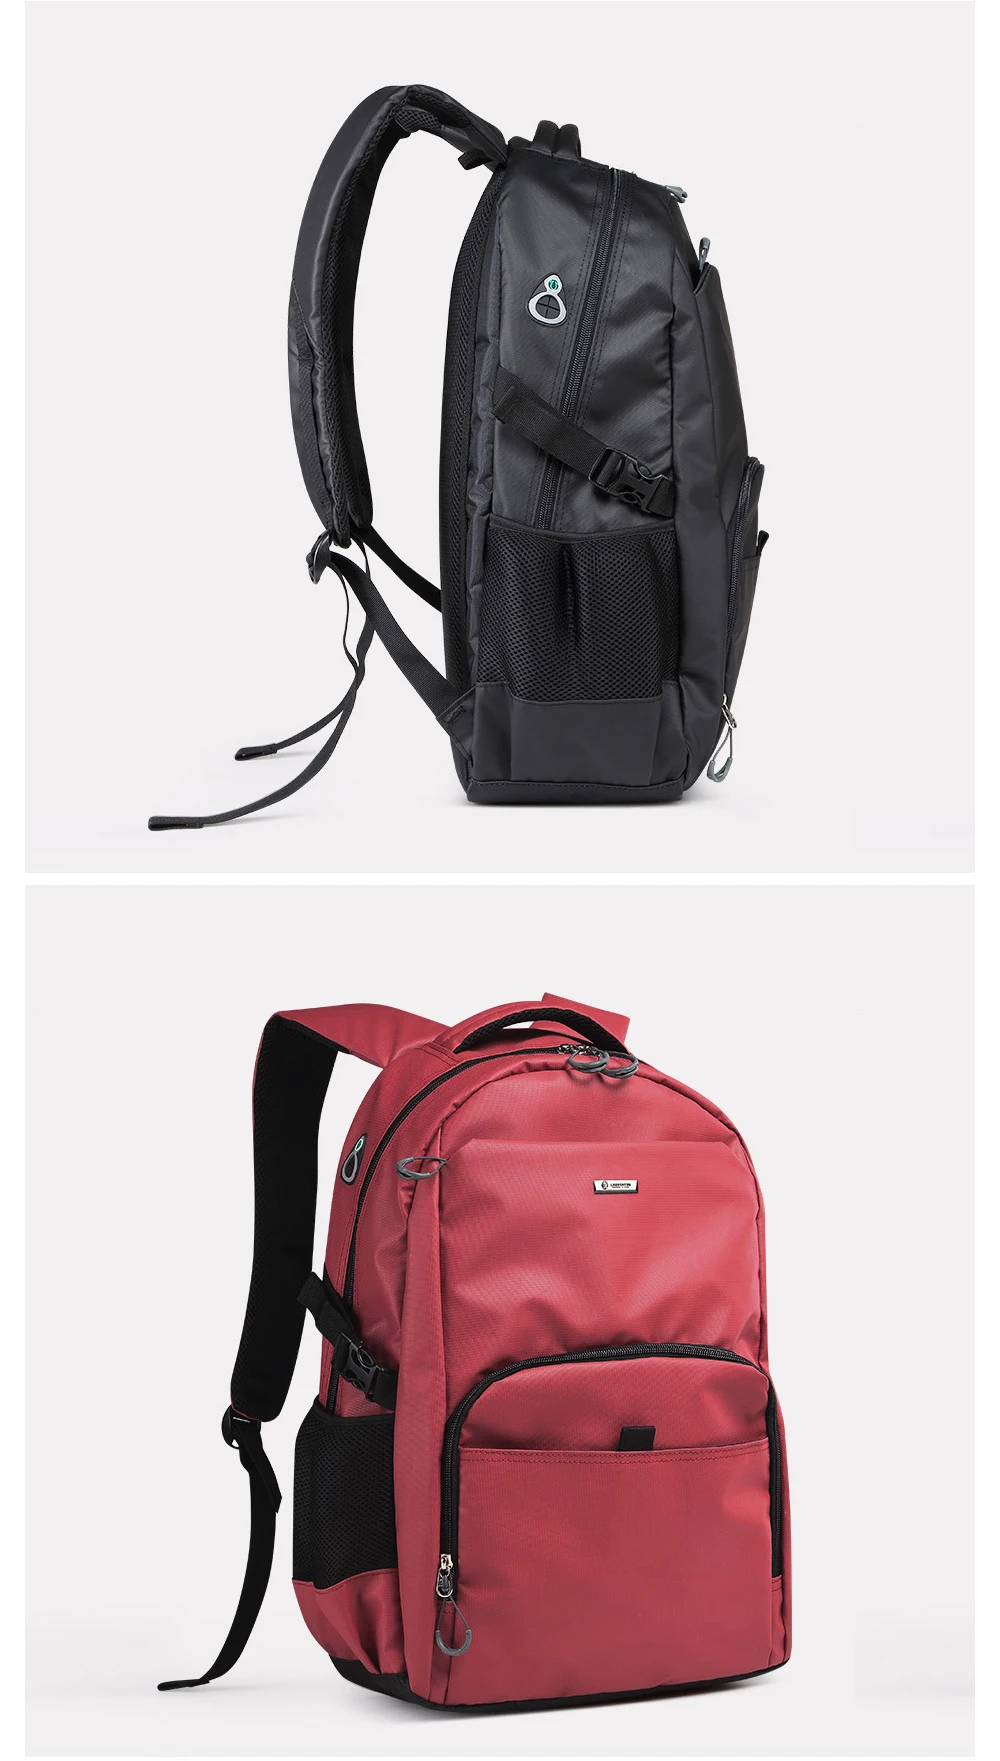 LAORENTOU рюкзак для мужчин и женщин, сумка для ноутбука, сумка для компьютера, модные рюкзаки для девочек, школьная сумка большой емкости, Модный женский рюкзак